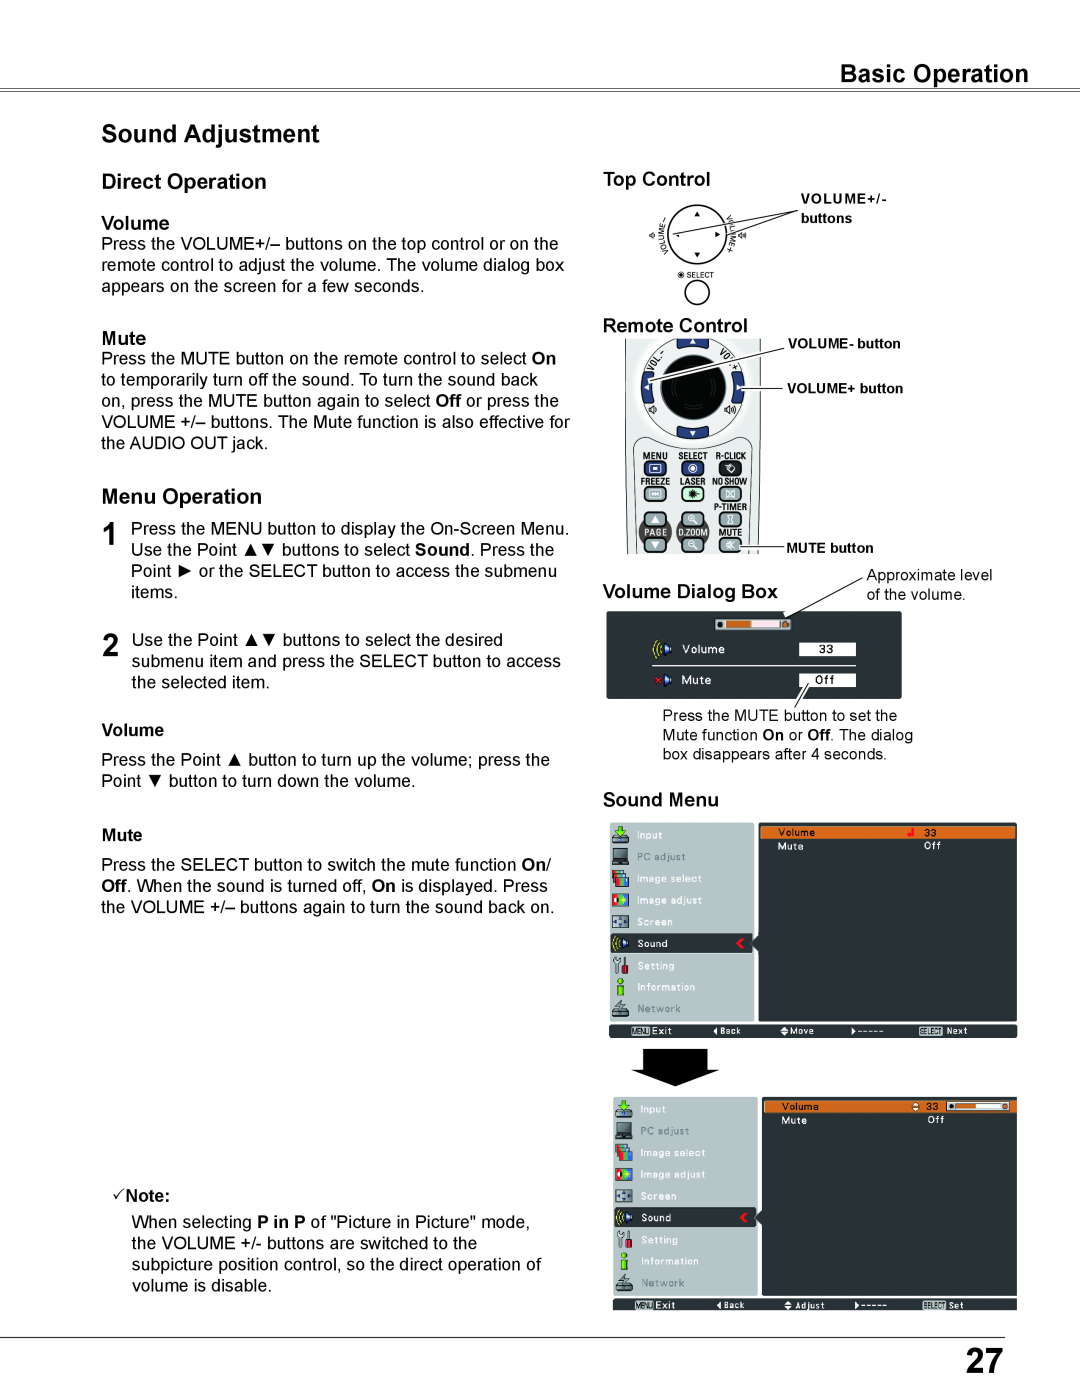 Sanyo WXU700A Sound Adjustment, Direct Operation, Menu Operation, Mute, Volume Dialog Box, Sound Menu, Basic Operation 